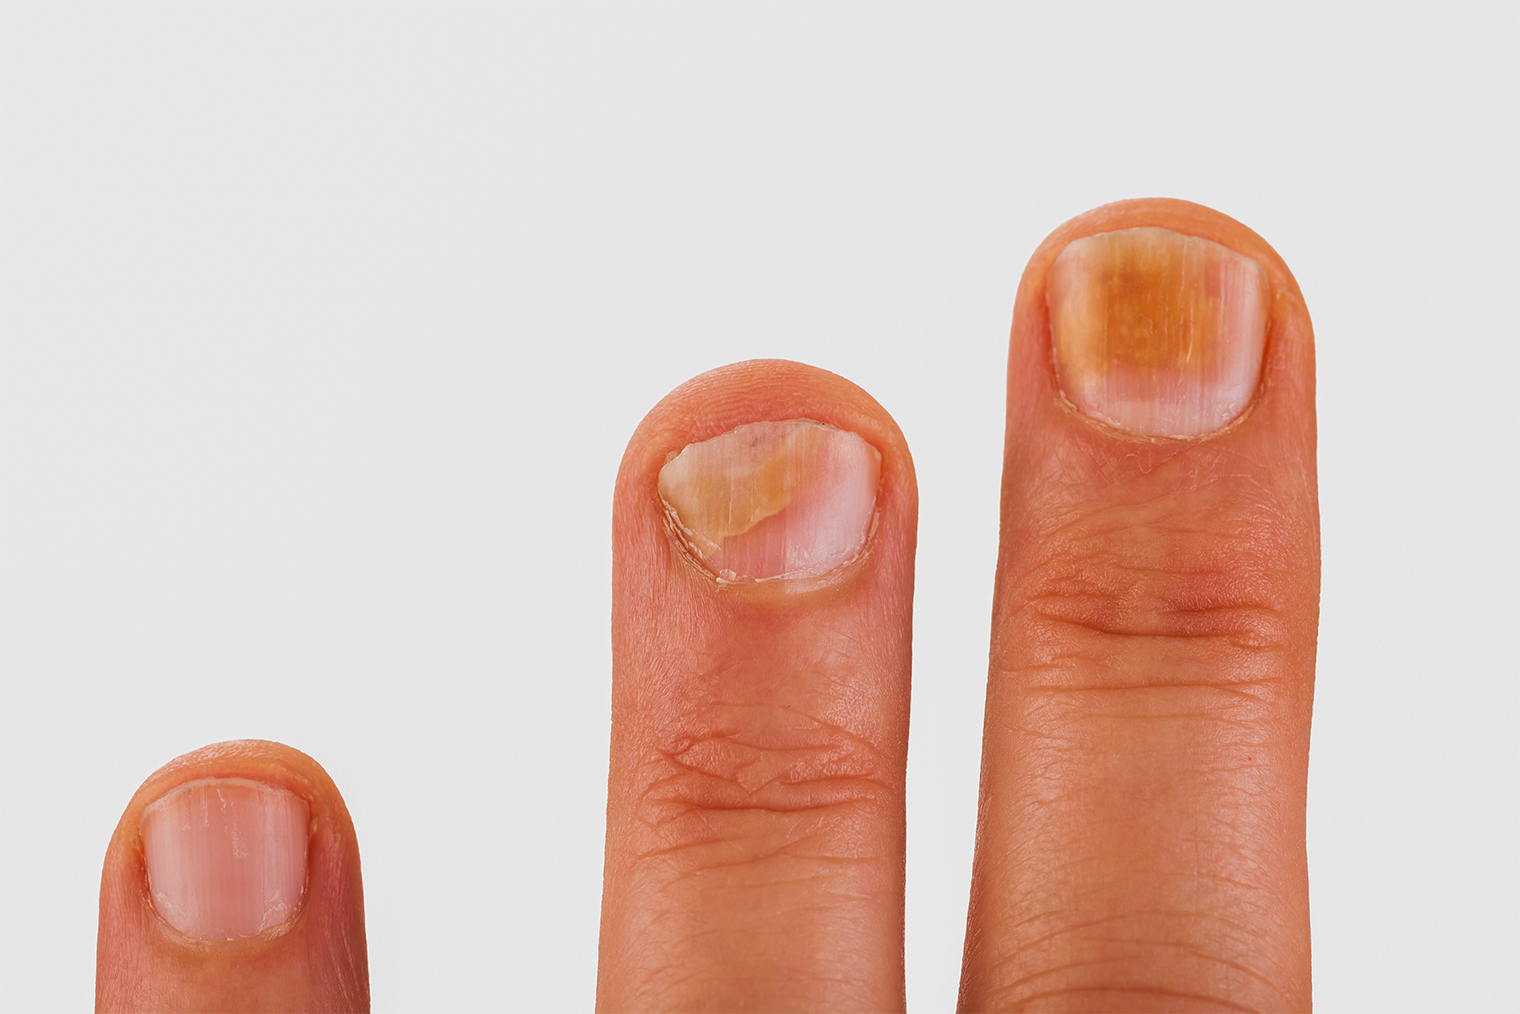 Ногти с грибковой инфекцией. Фото: Jan Schneckenhaus / Shutterstock